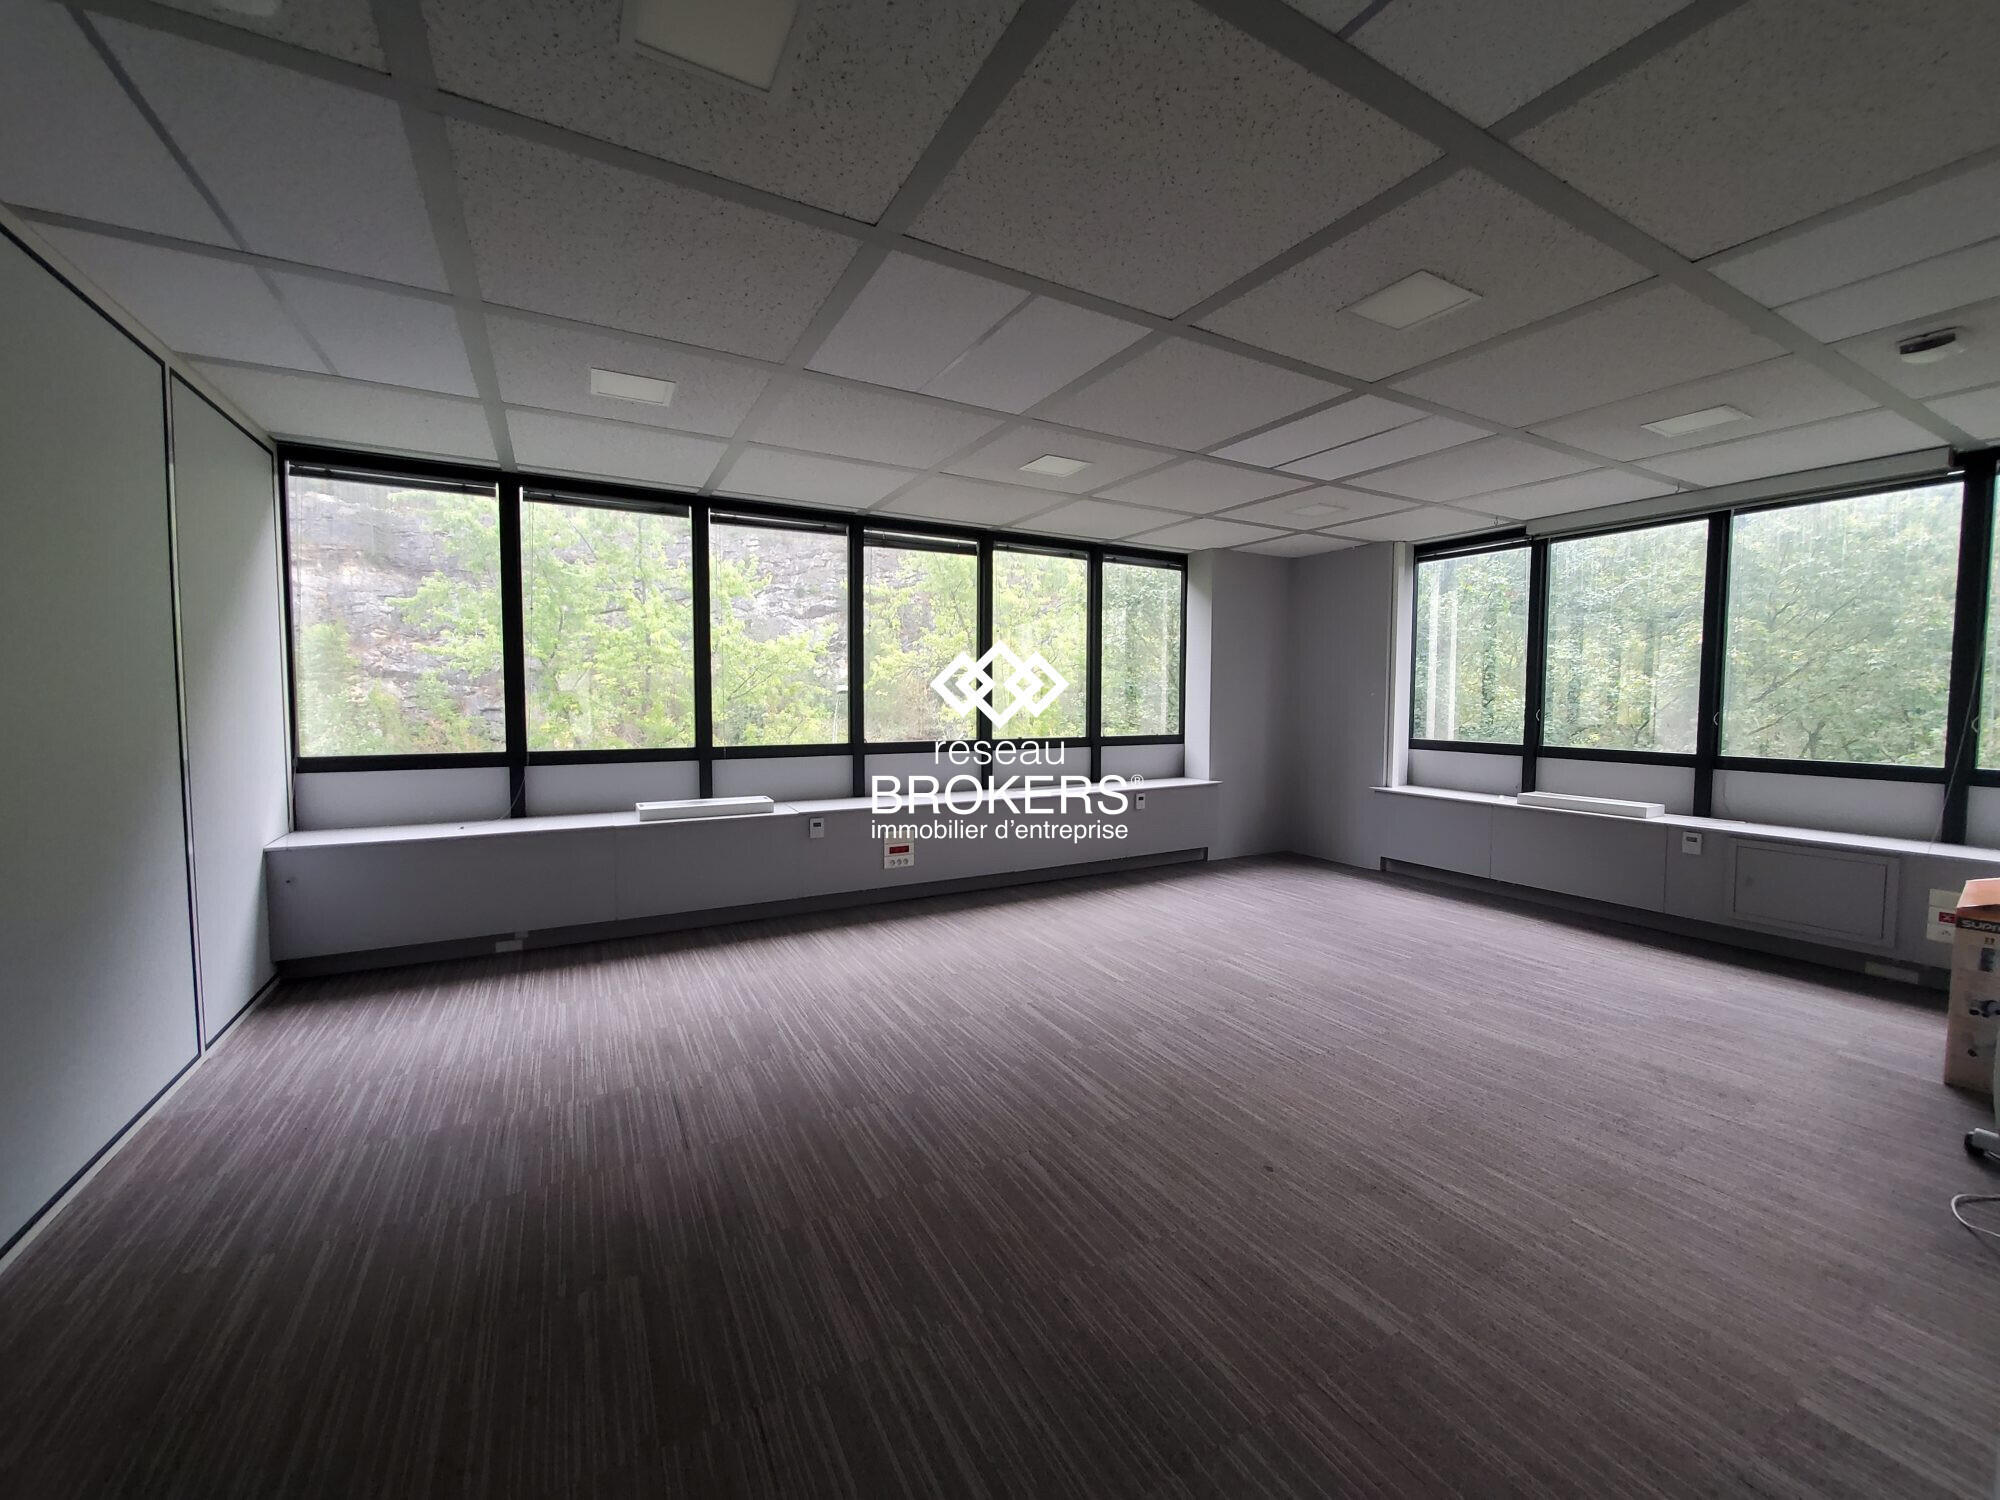 Vente bureaux 1100m² en monopropriété à Annecy